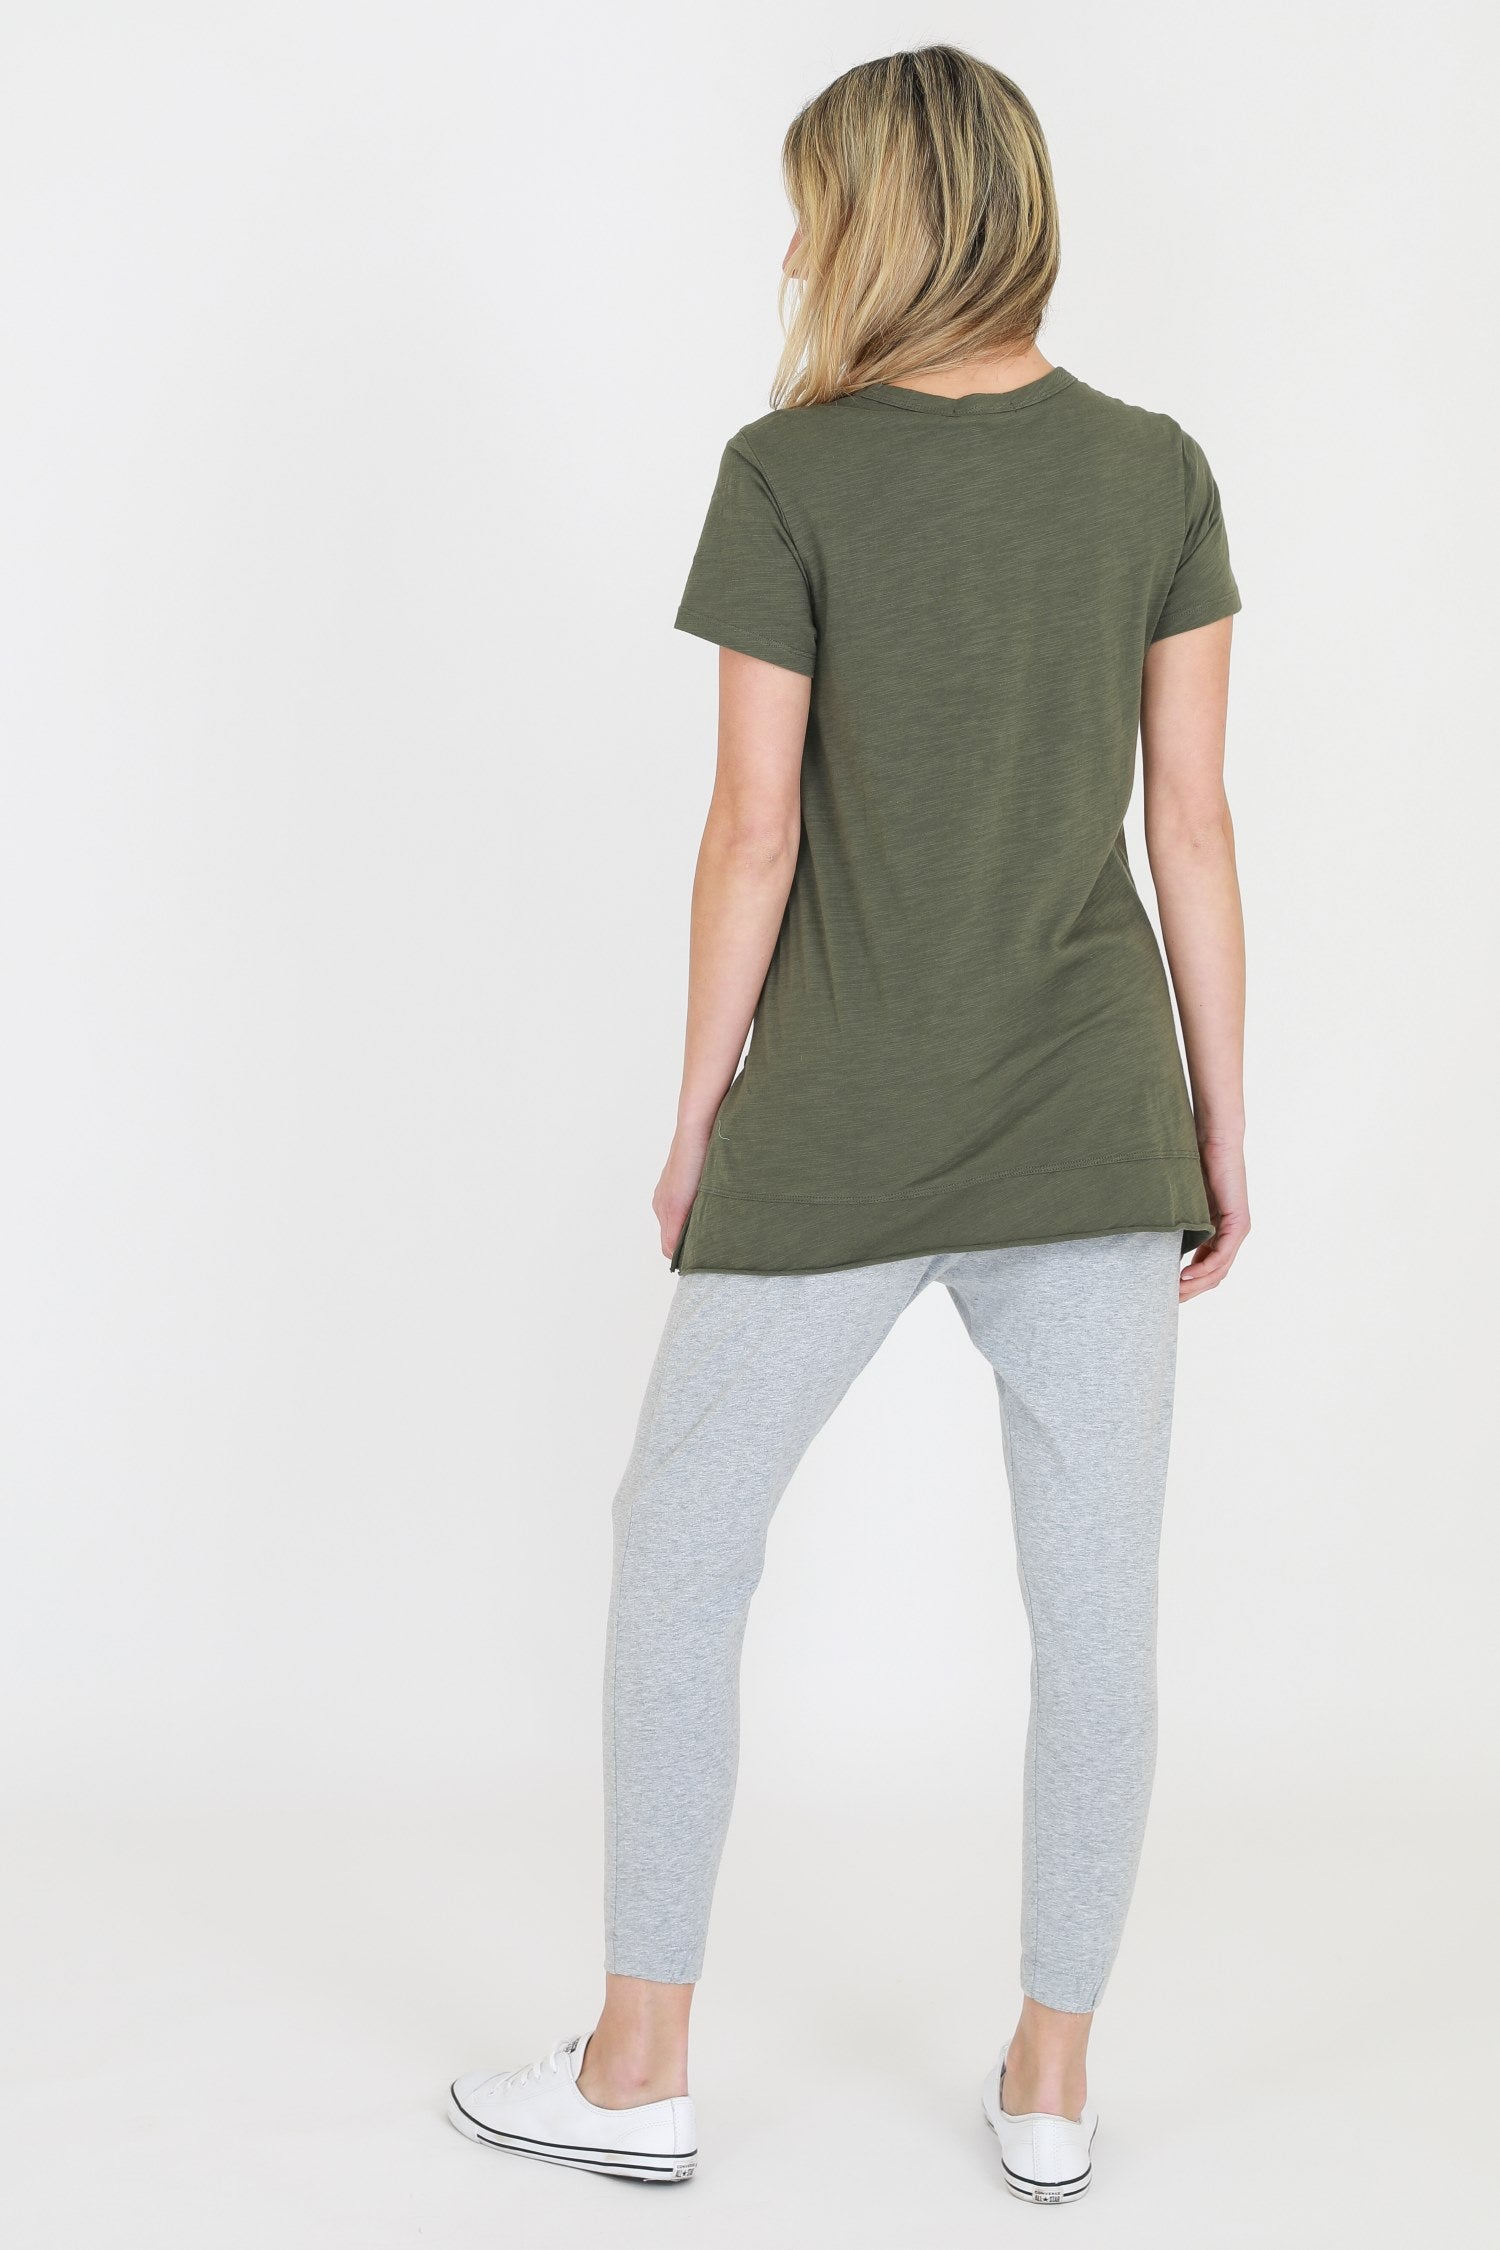 oversized green t shirt #color_khaki